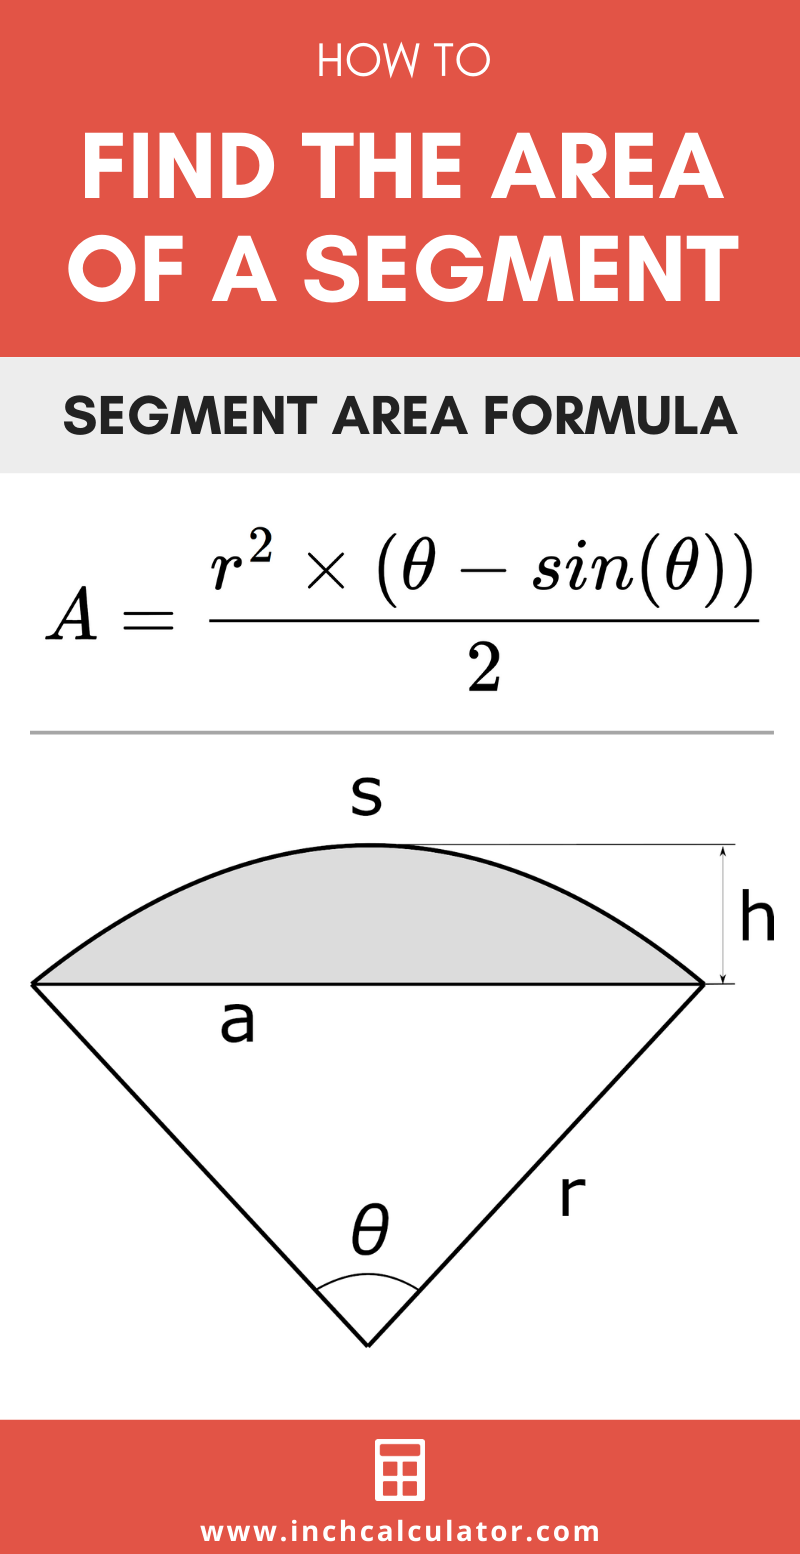 Share segment area calculator